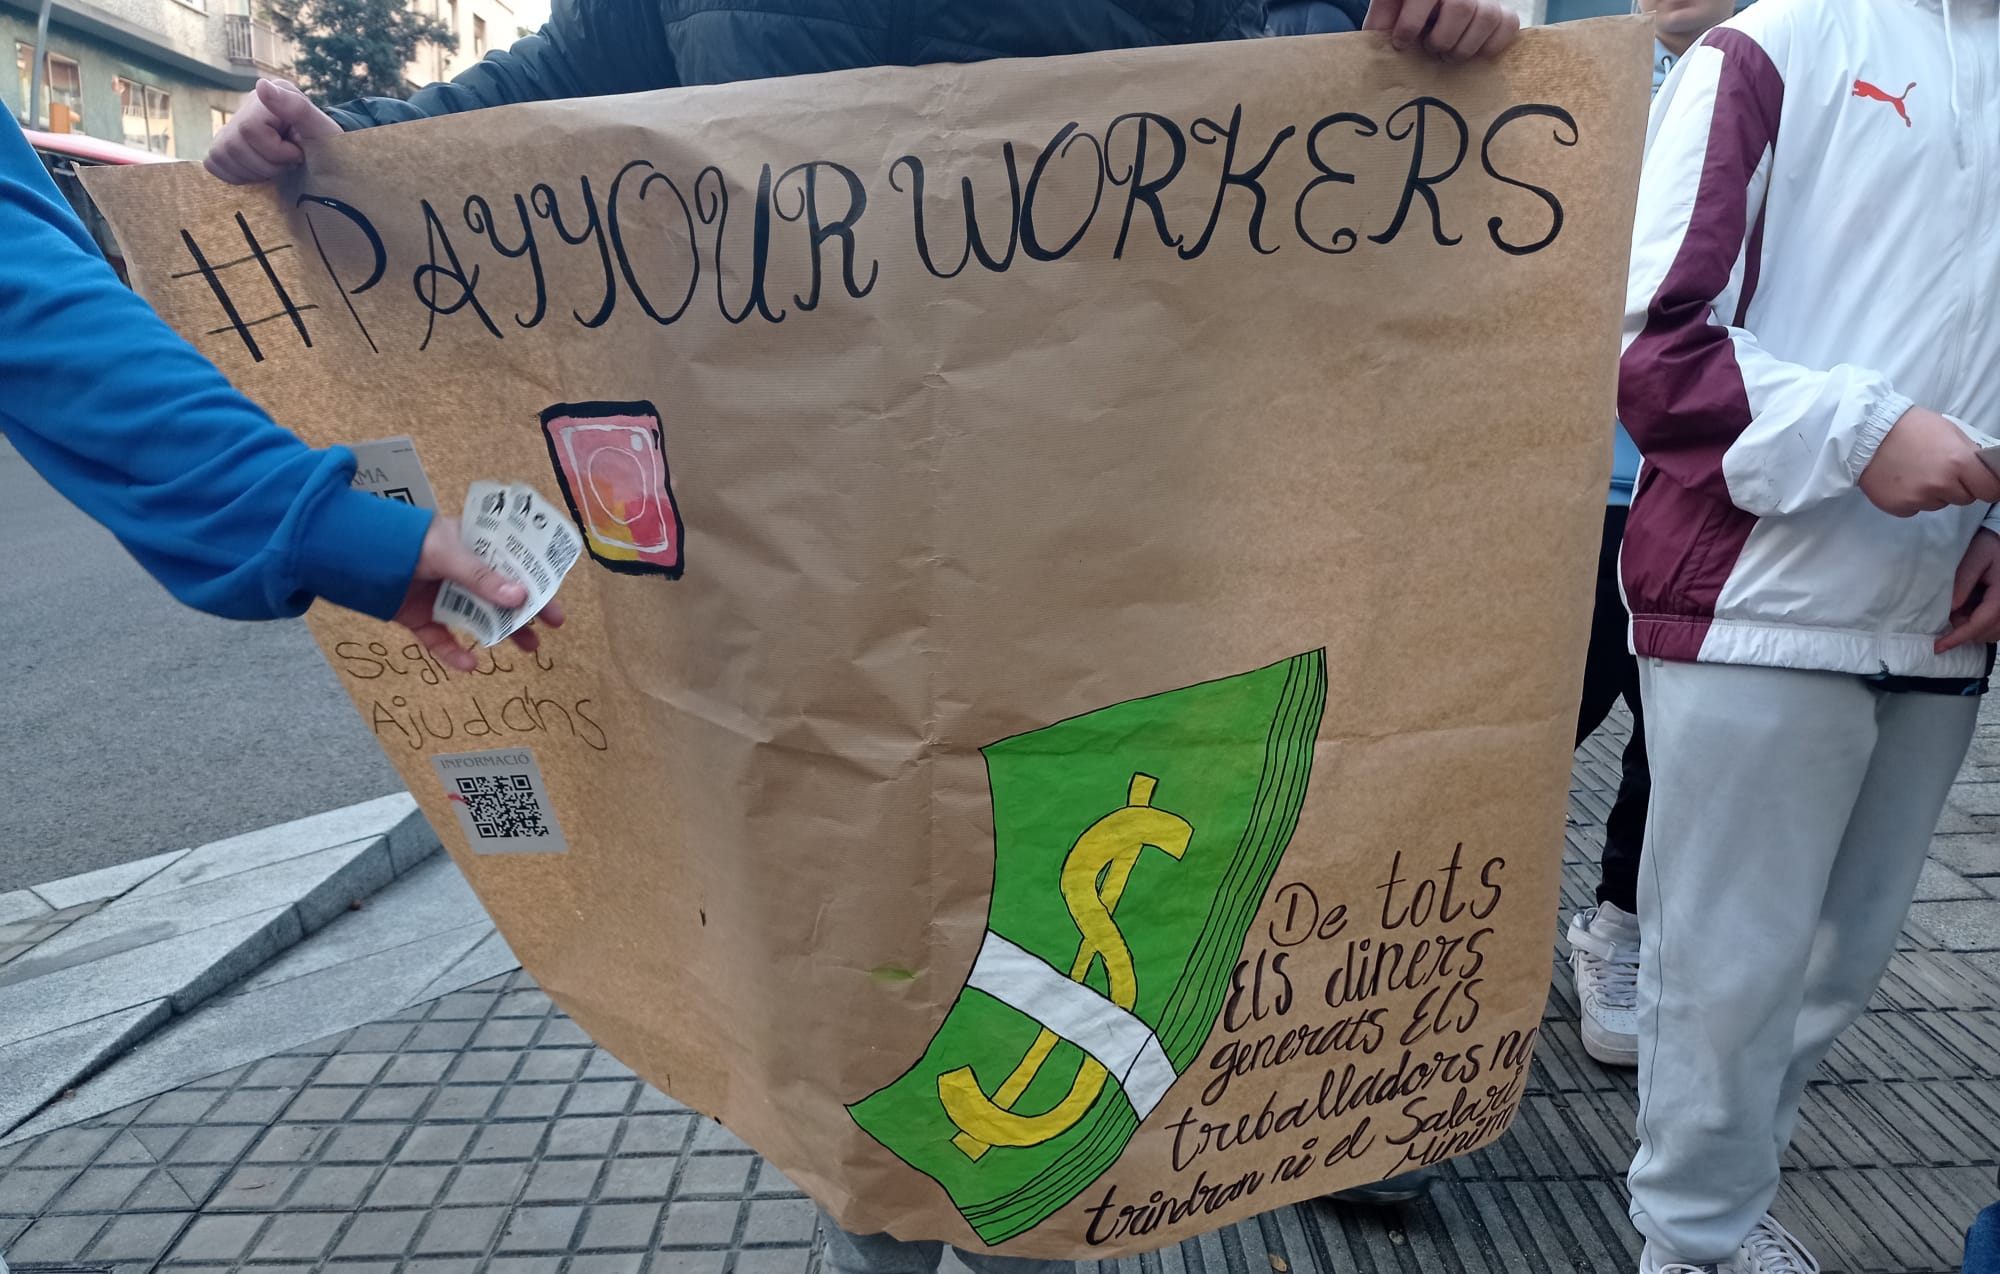 Pancarta en la que se lee "pay your workers"